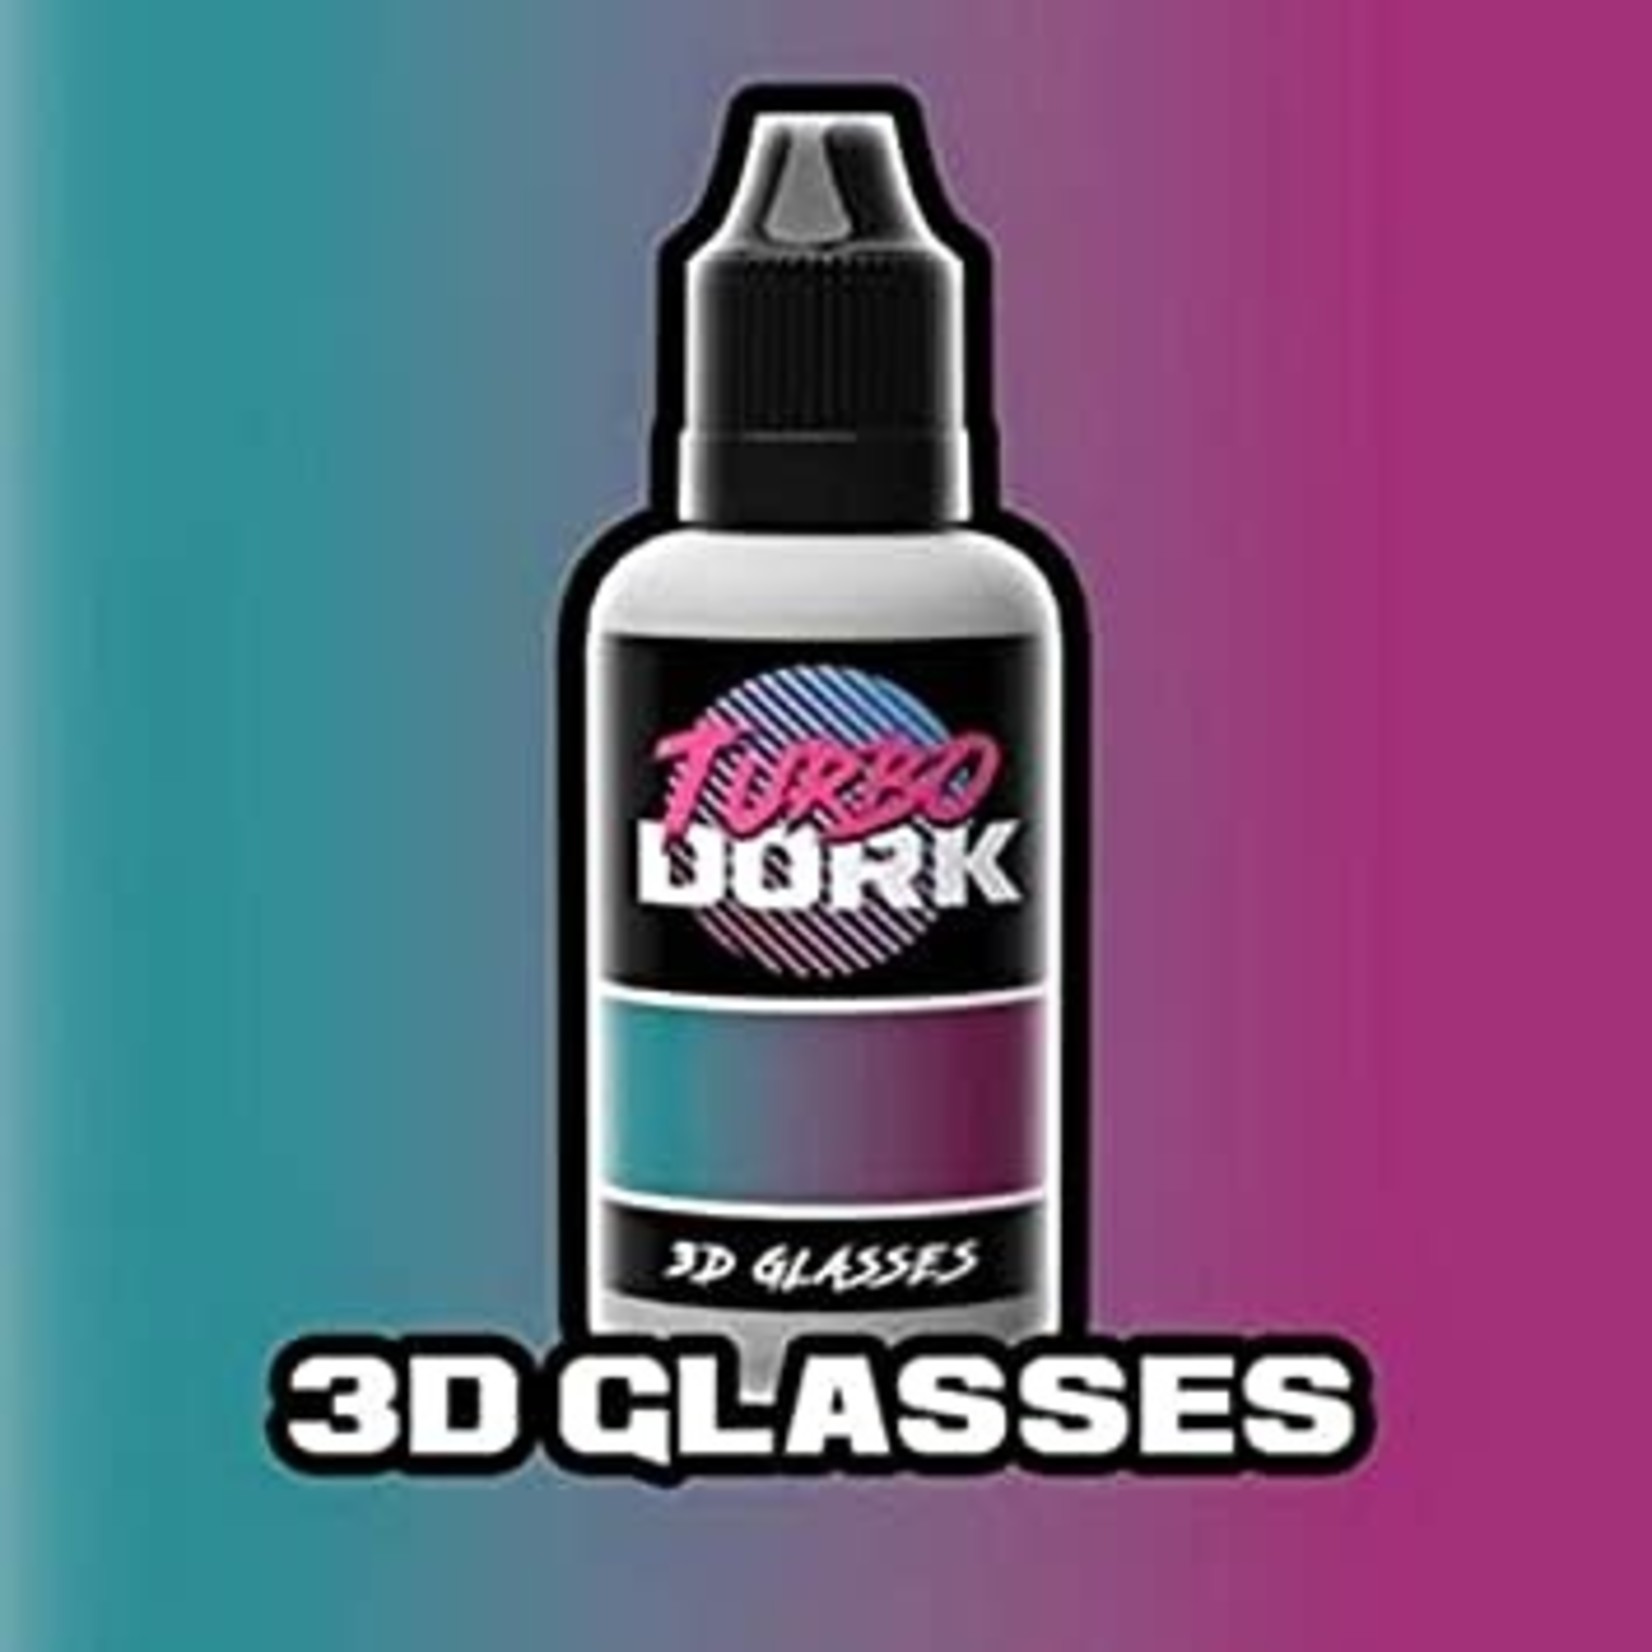 Turbo Dork: 3D Glasses 20ml